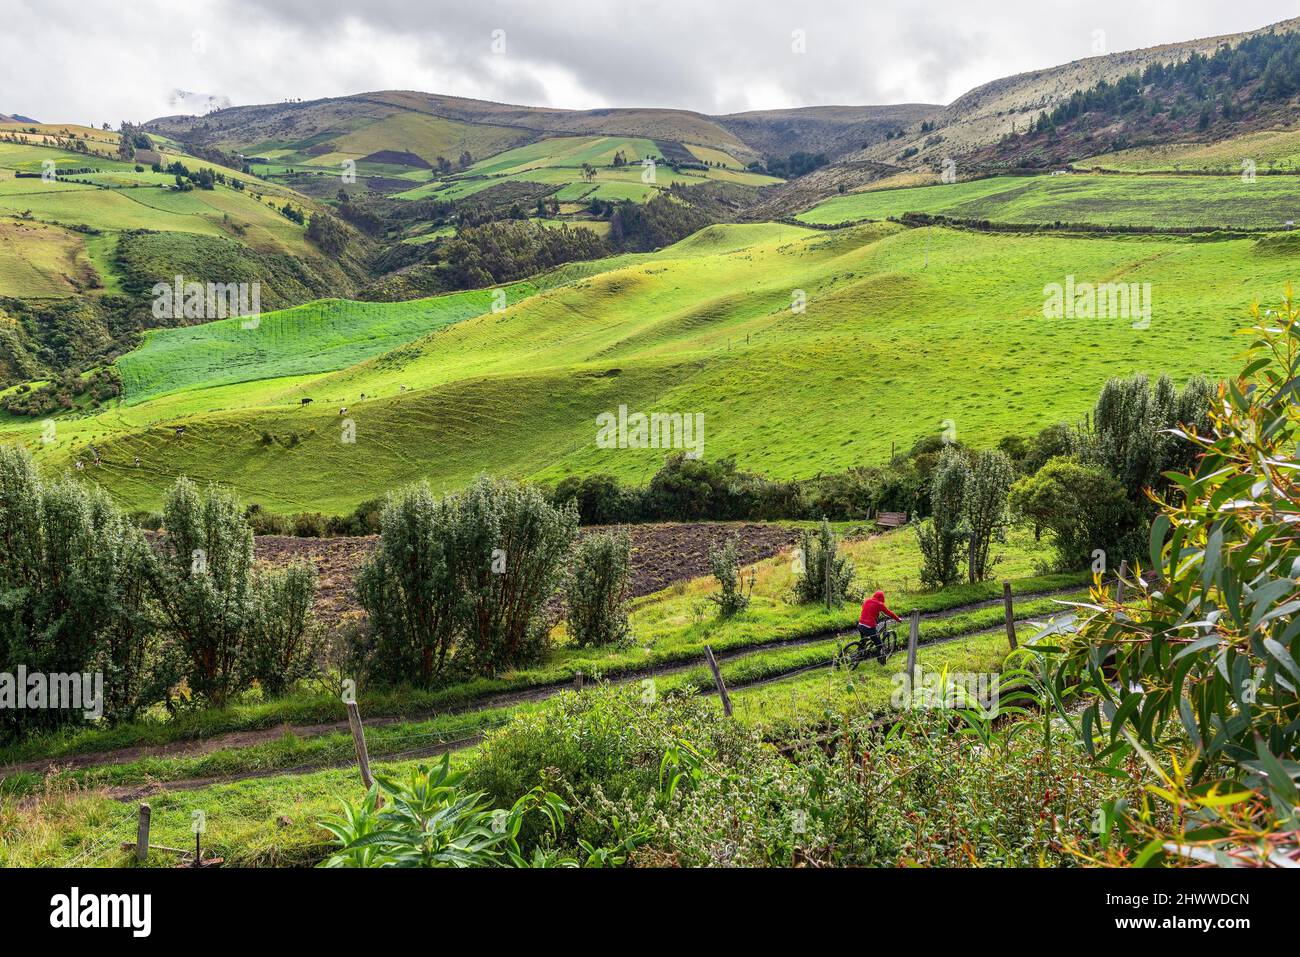 Homme sur la route de campagne avec champs verts, collines et vaches, parc national Cayambe Coca, Equateur. Banque D'Images